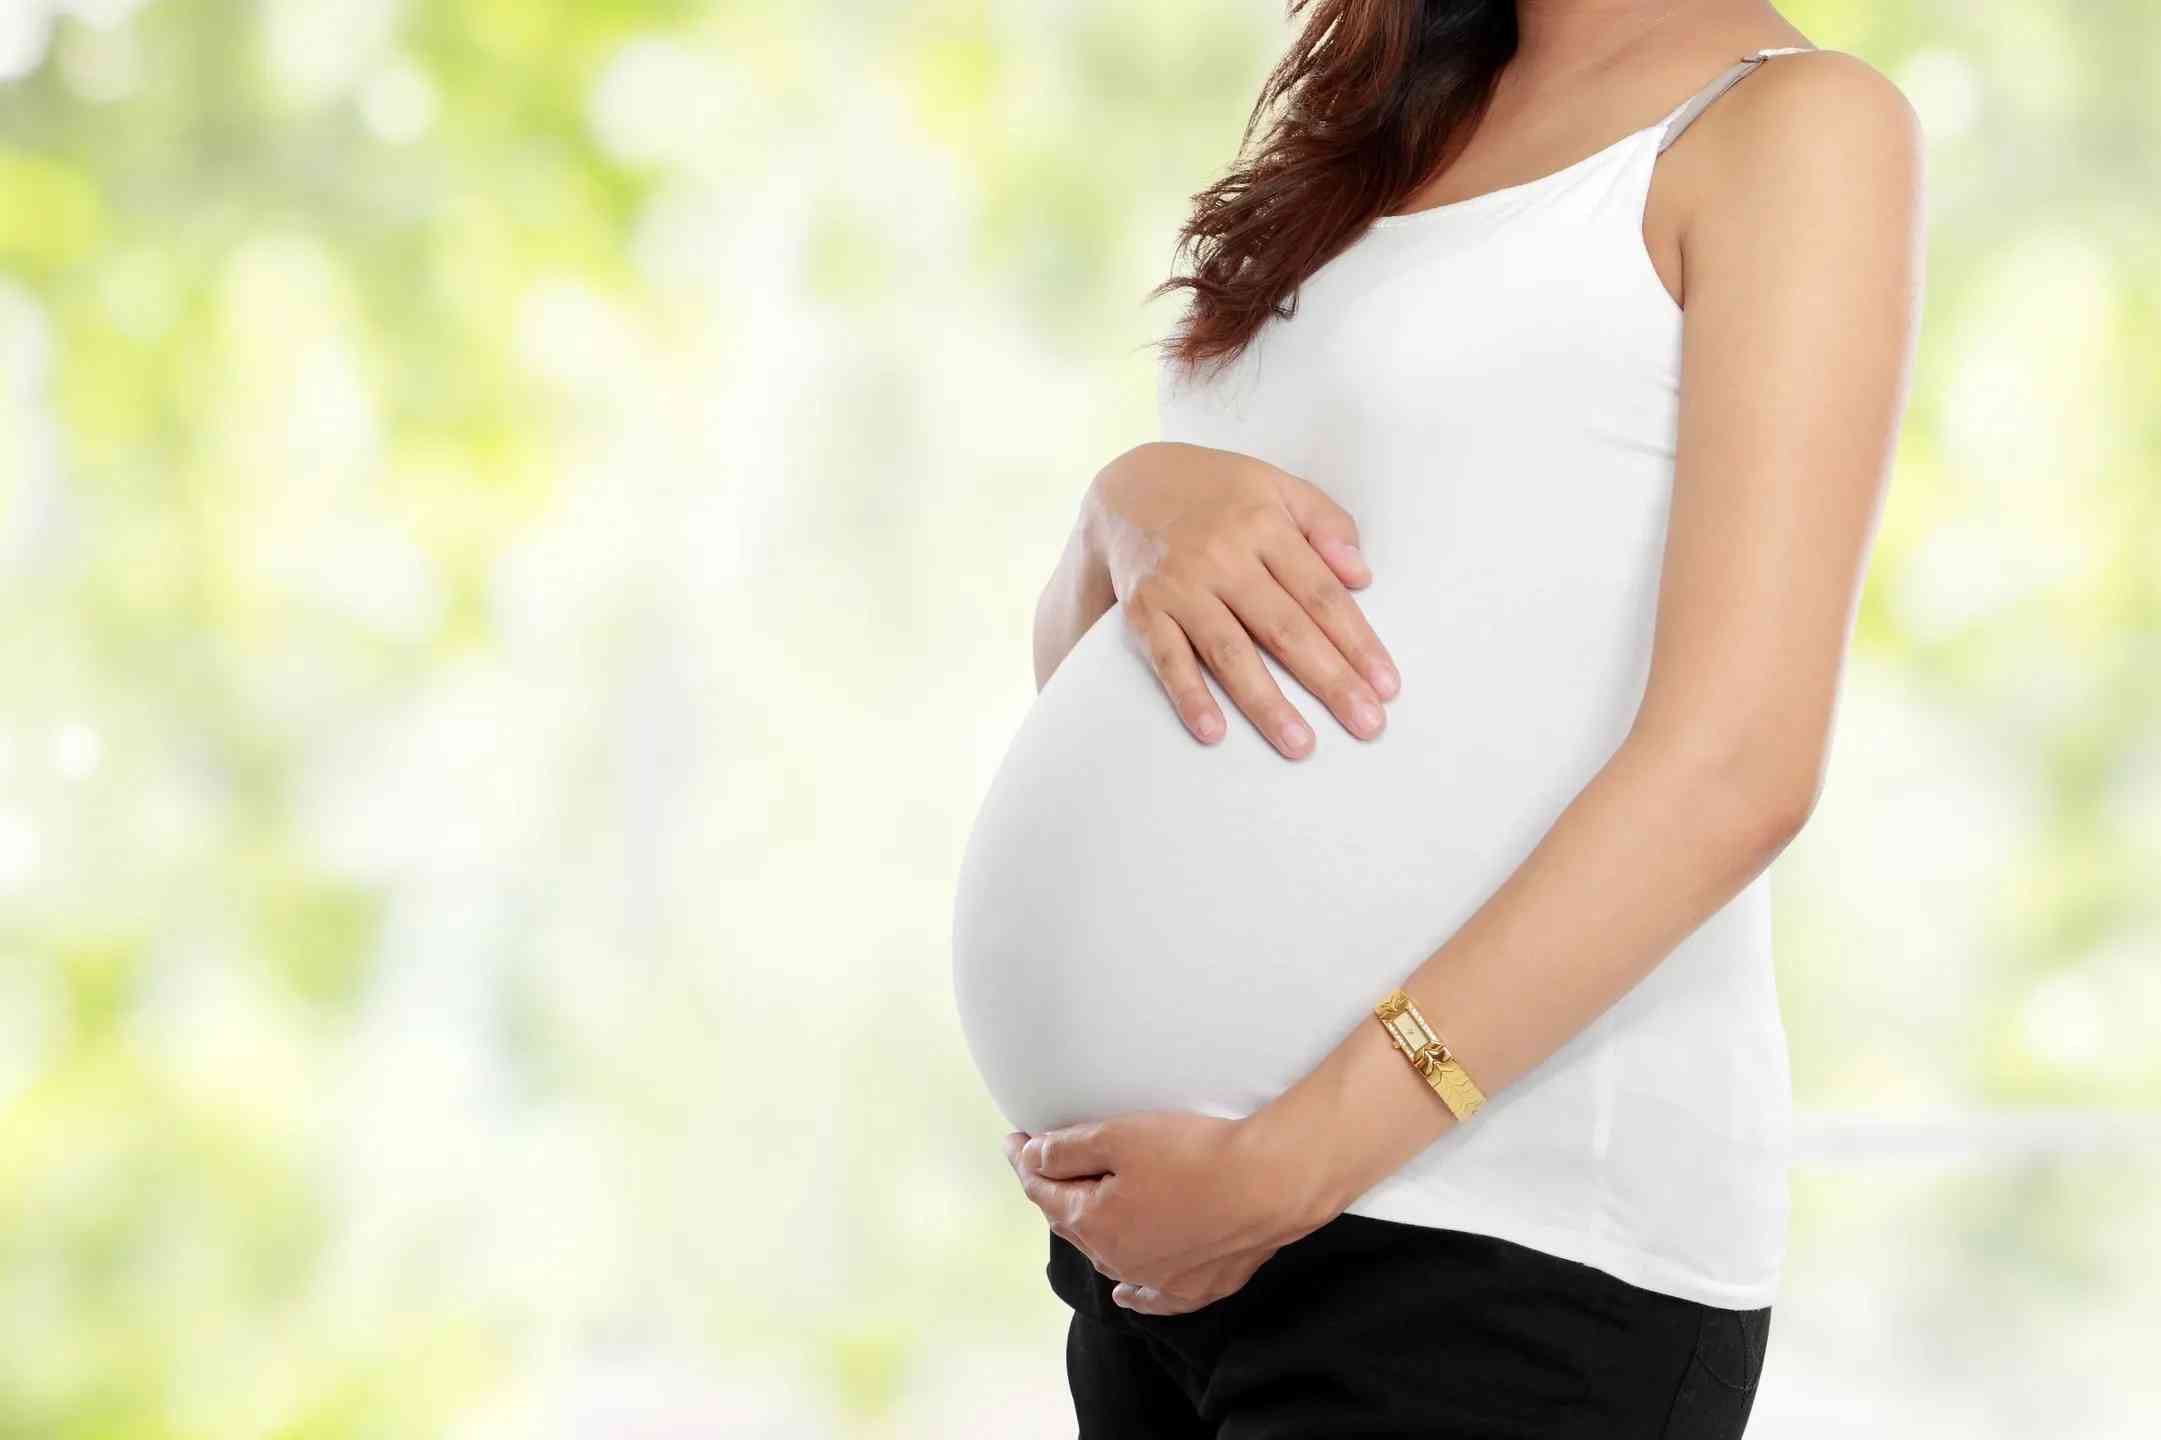 孕妇长期用炉甘石可能会局部皮肤干燥